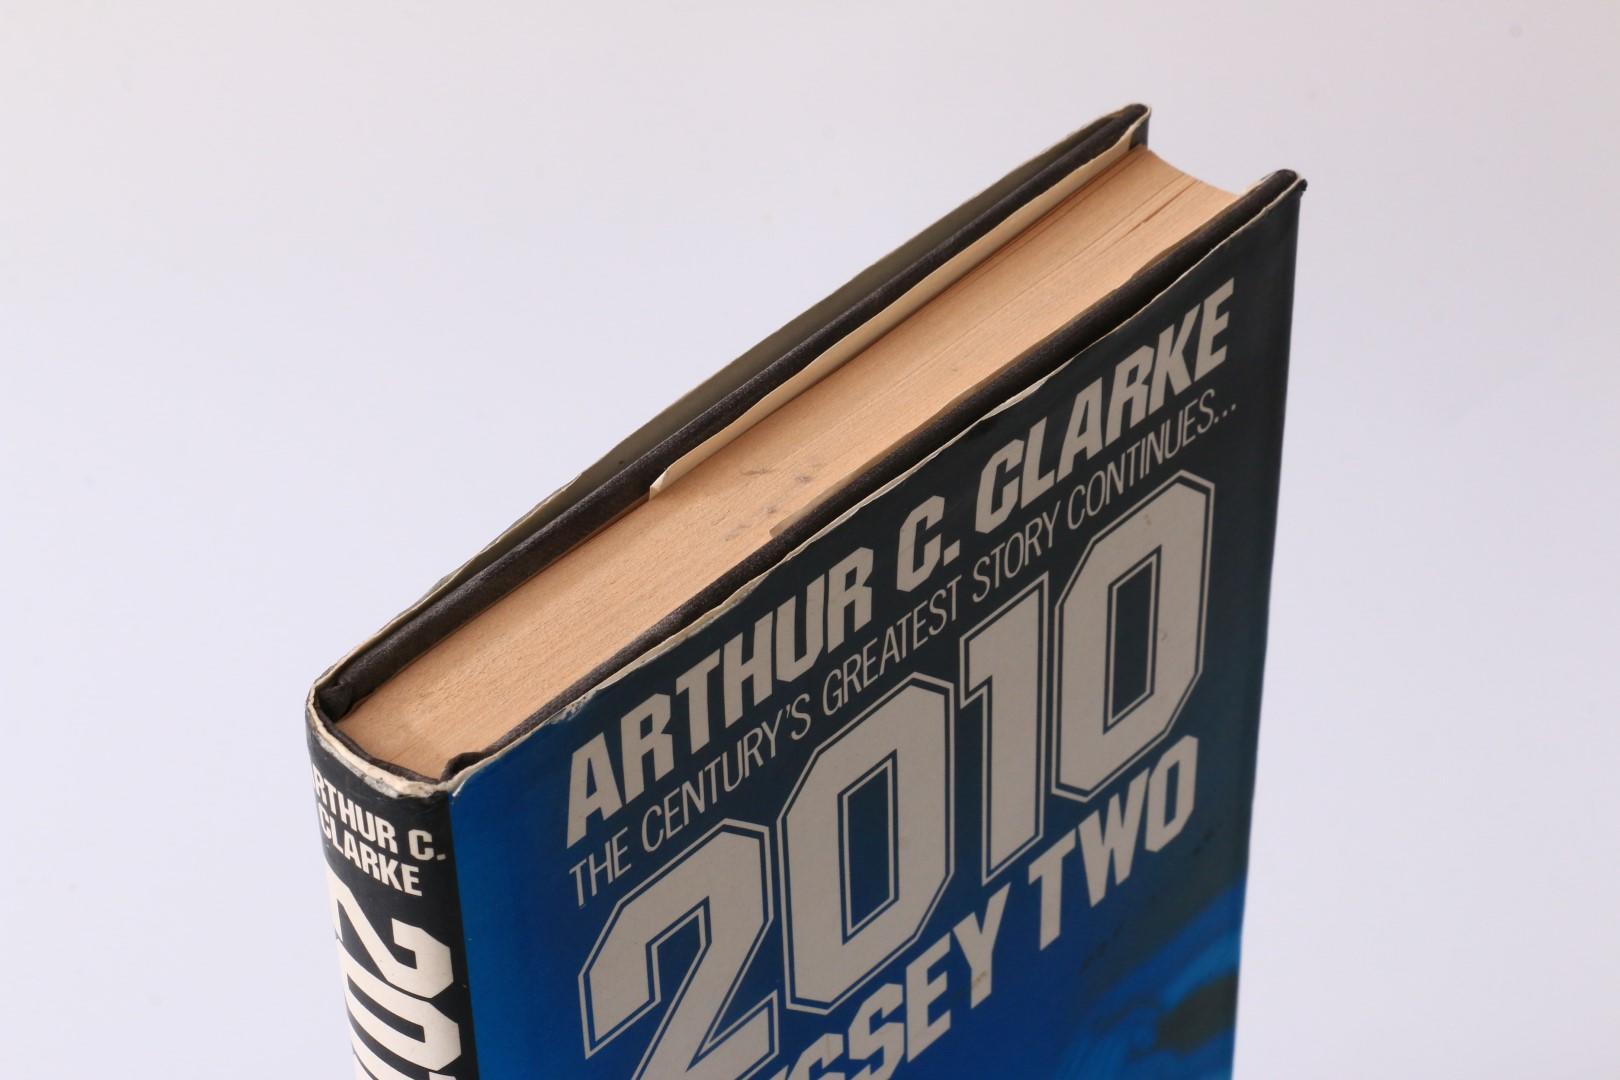 Arthur C. Clarke - 2010: Odyssesy Two - Granada, 1982, Signed First Edition.